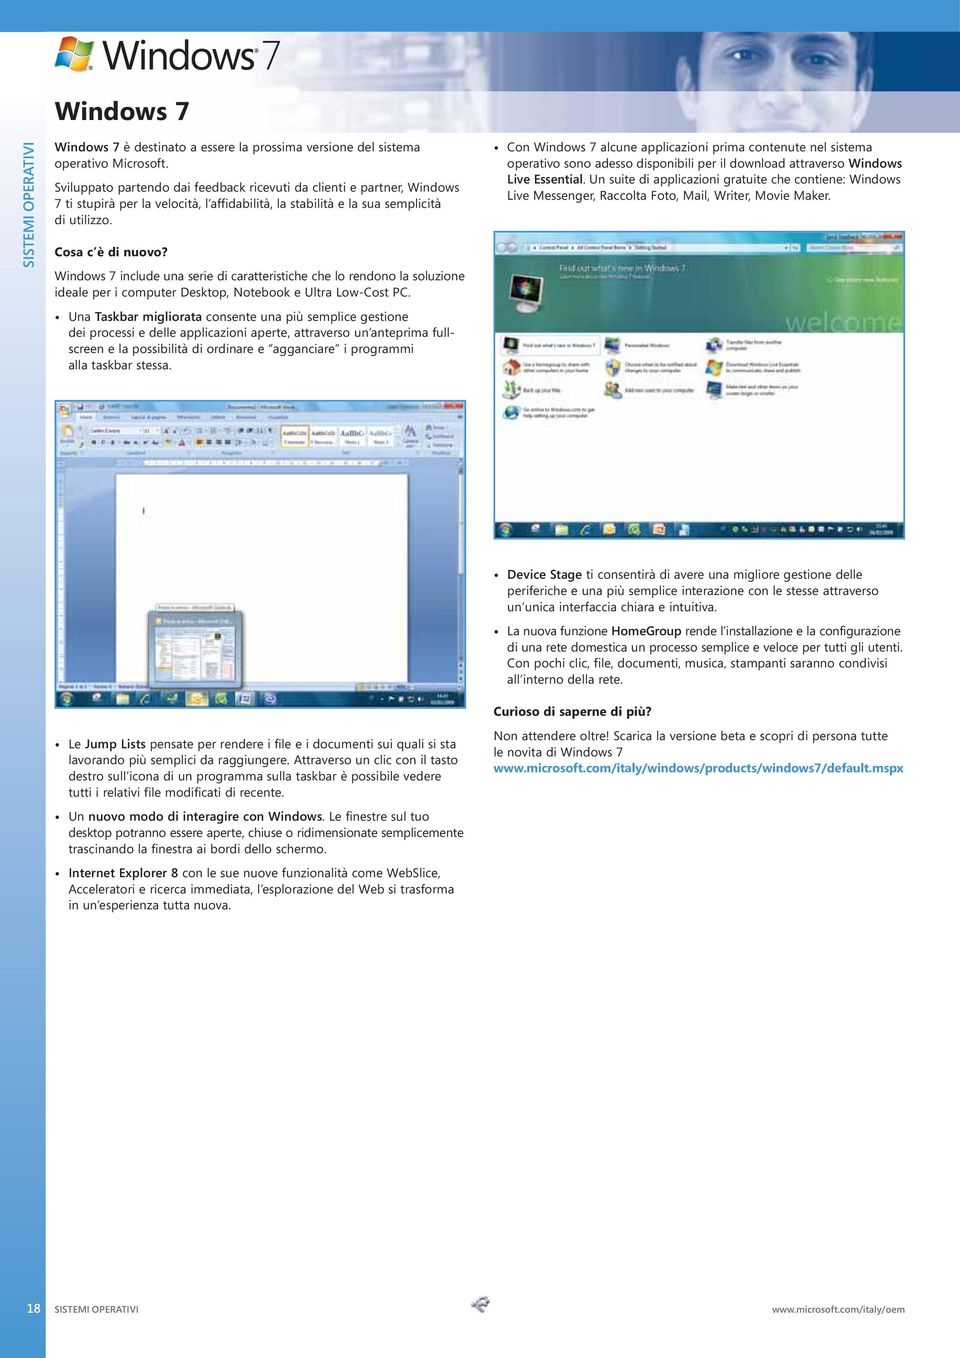 Windows 7 include una serie di caratteristiche che lo rendono la soluzione ideale per i computer Desktop, Notebook e Ultra Low-Cost PC.